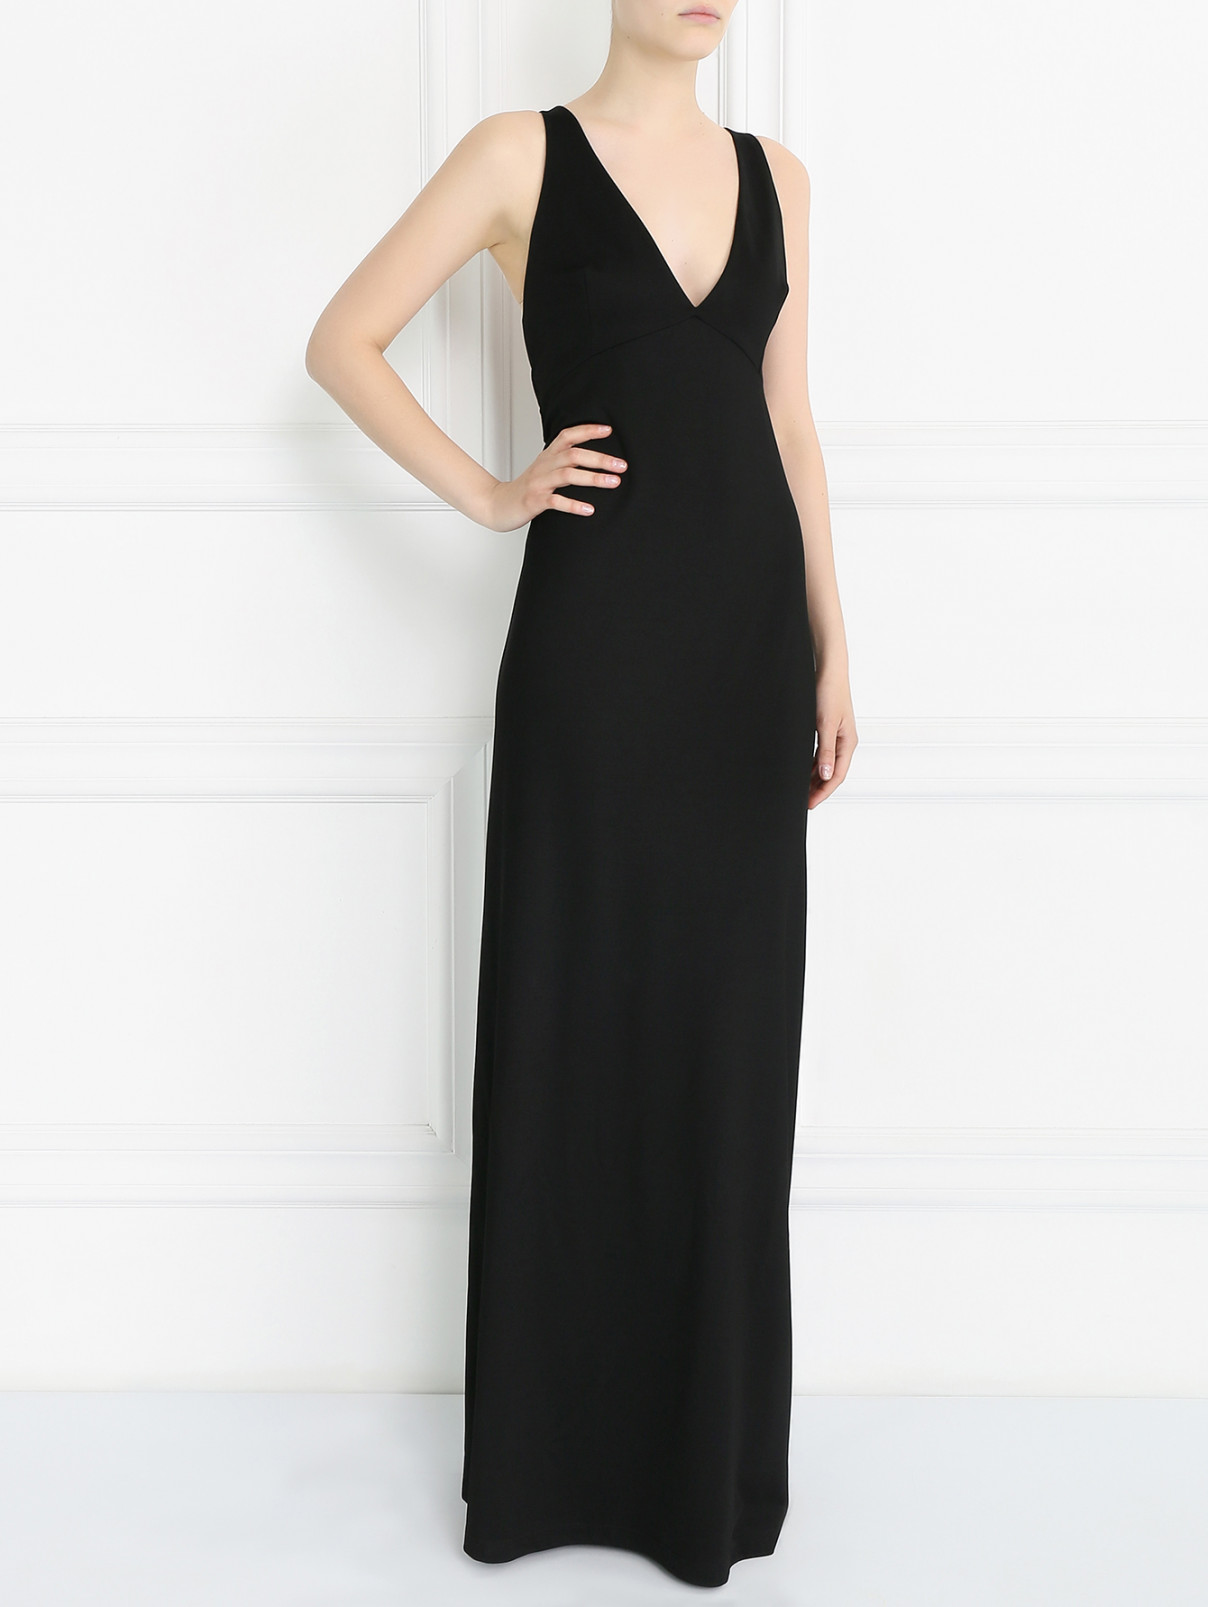 Платье в пол с открытой спиной Barbara Bui  –  Модель Общий вид  – Цвет:  Черный